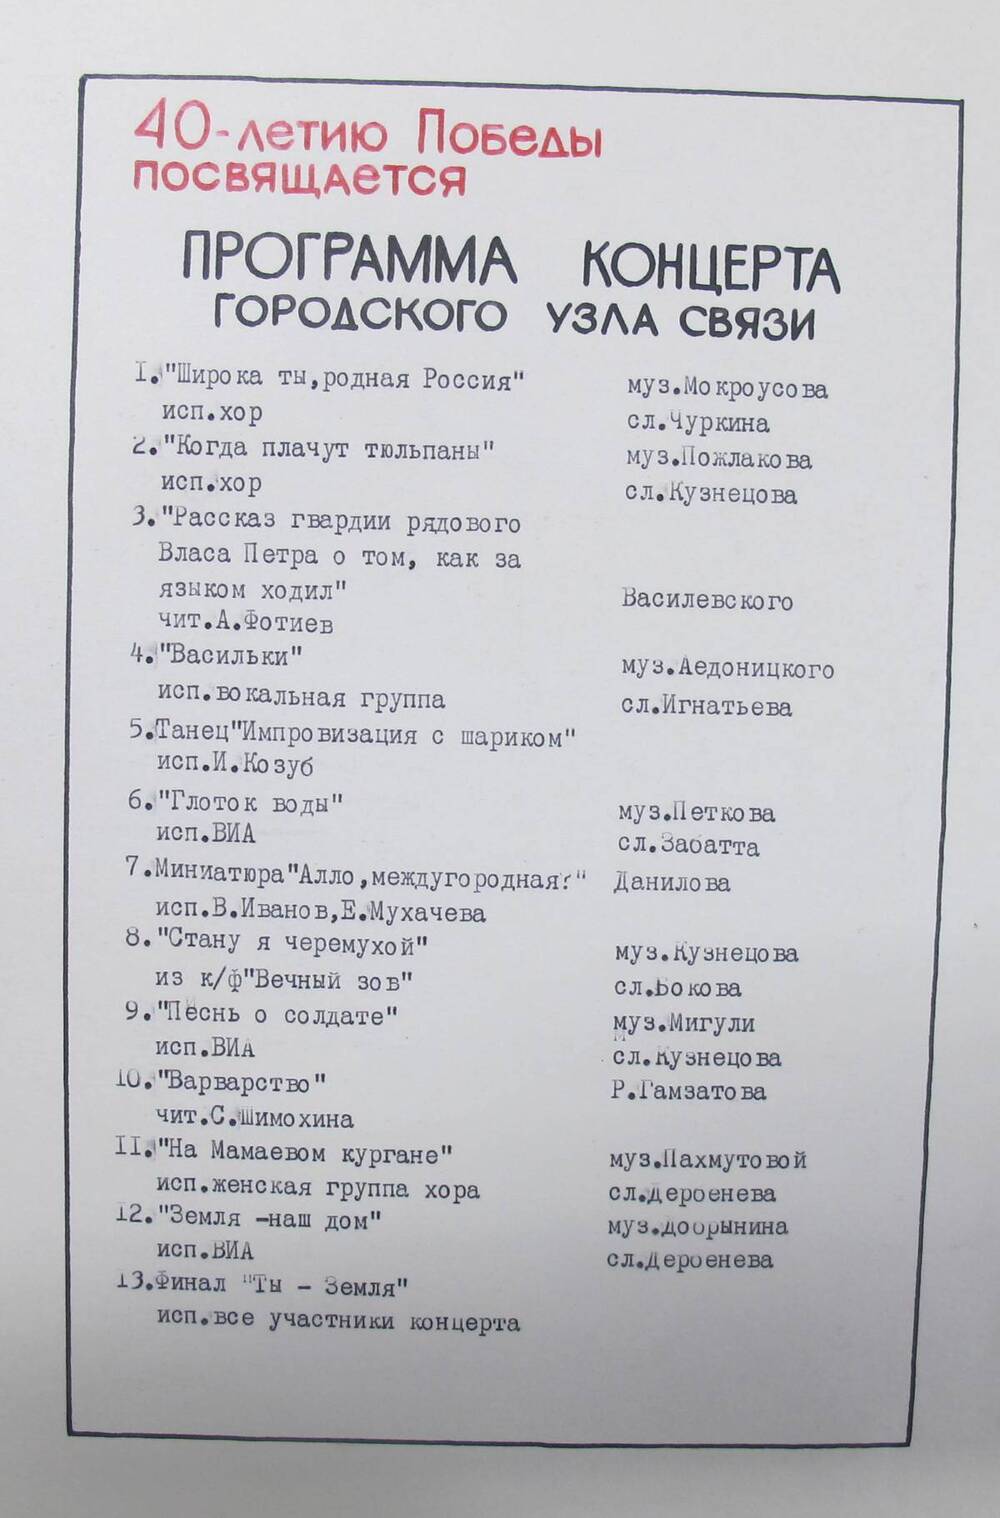 Программа концерта городского узла связи, посвященная 40 - летию Победы .